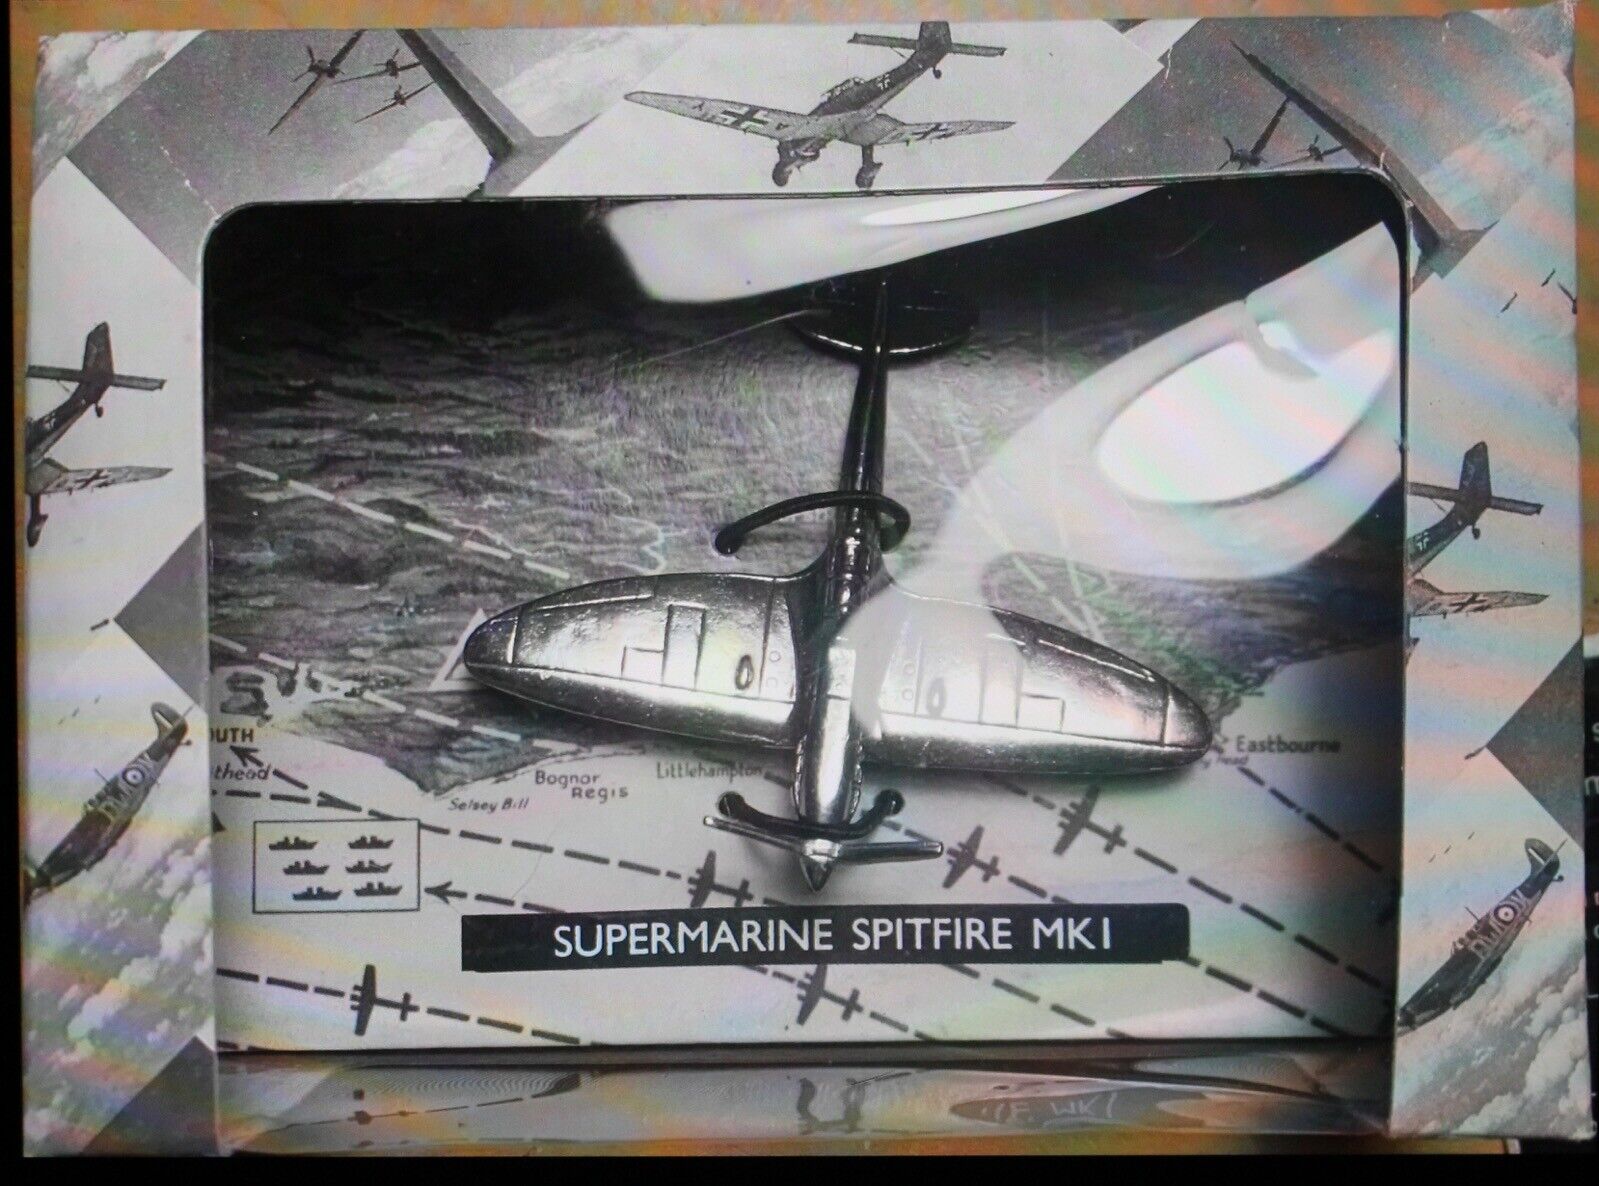 WESTAIR - SUPERMARINE SPITFIRE MKI - Miniature Plane - Battle of Britain 1940 